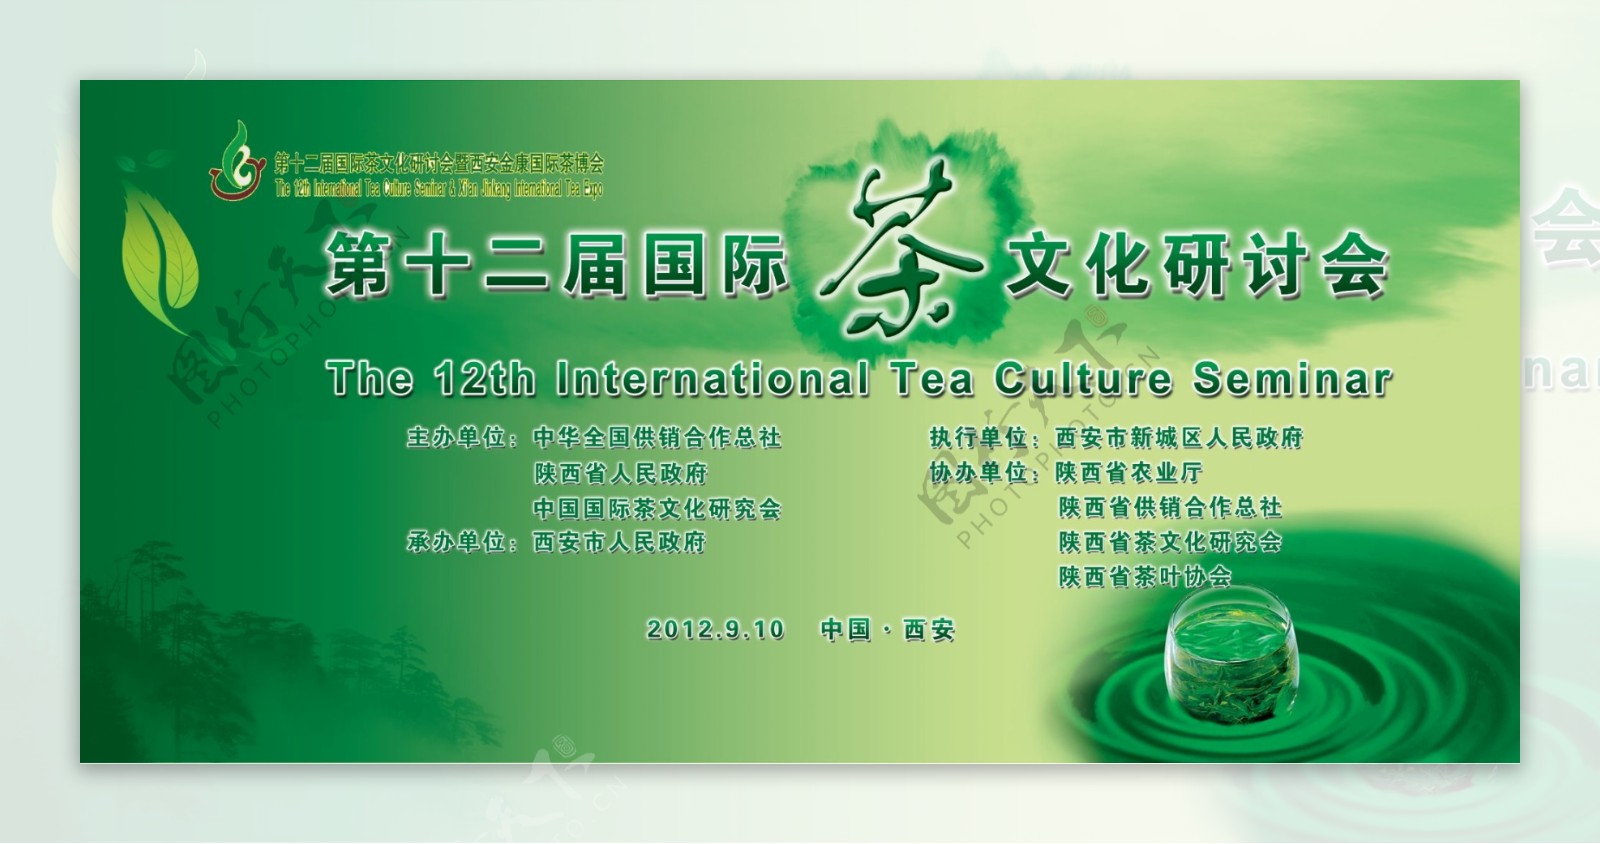 茶主题学术会议绿色背景海报山水墨画茶文化